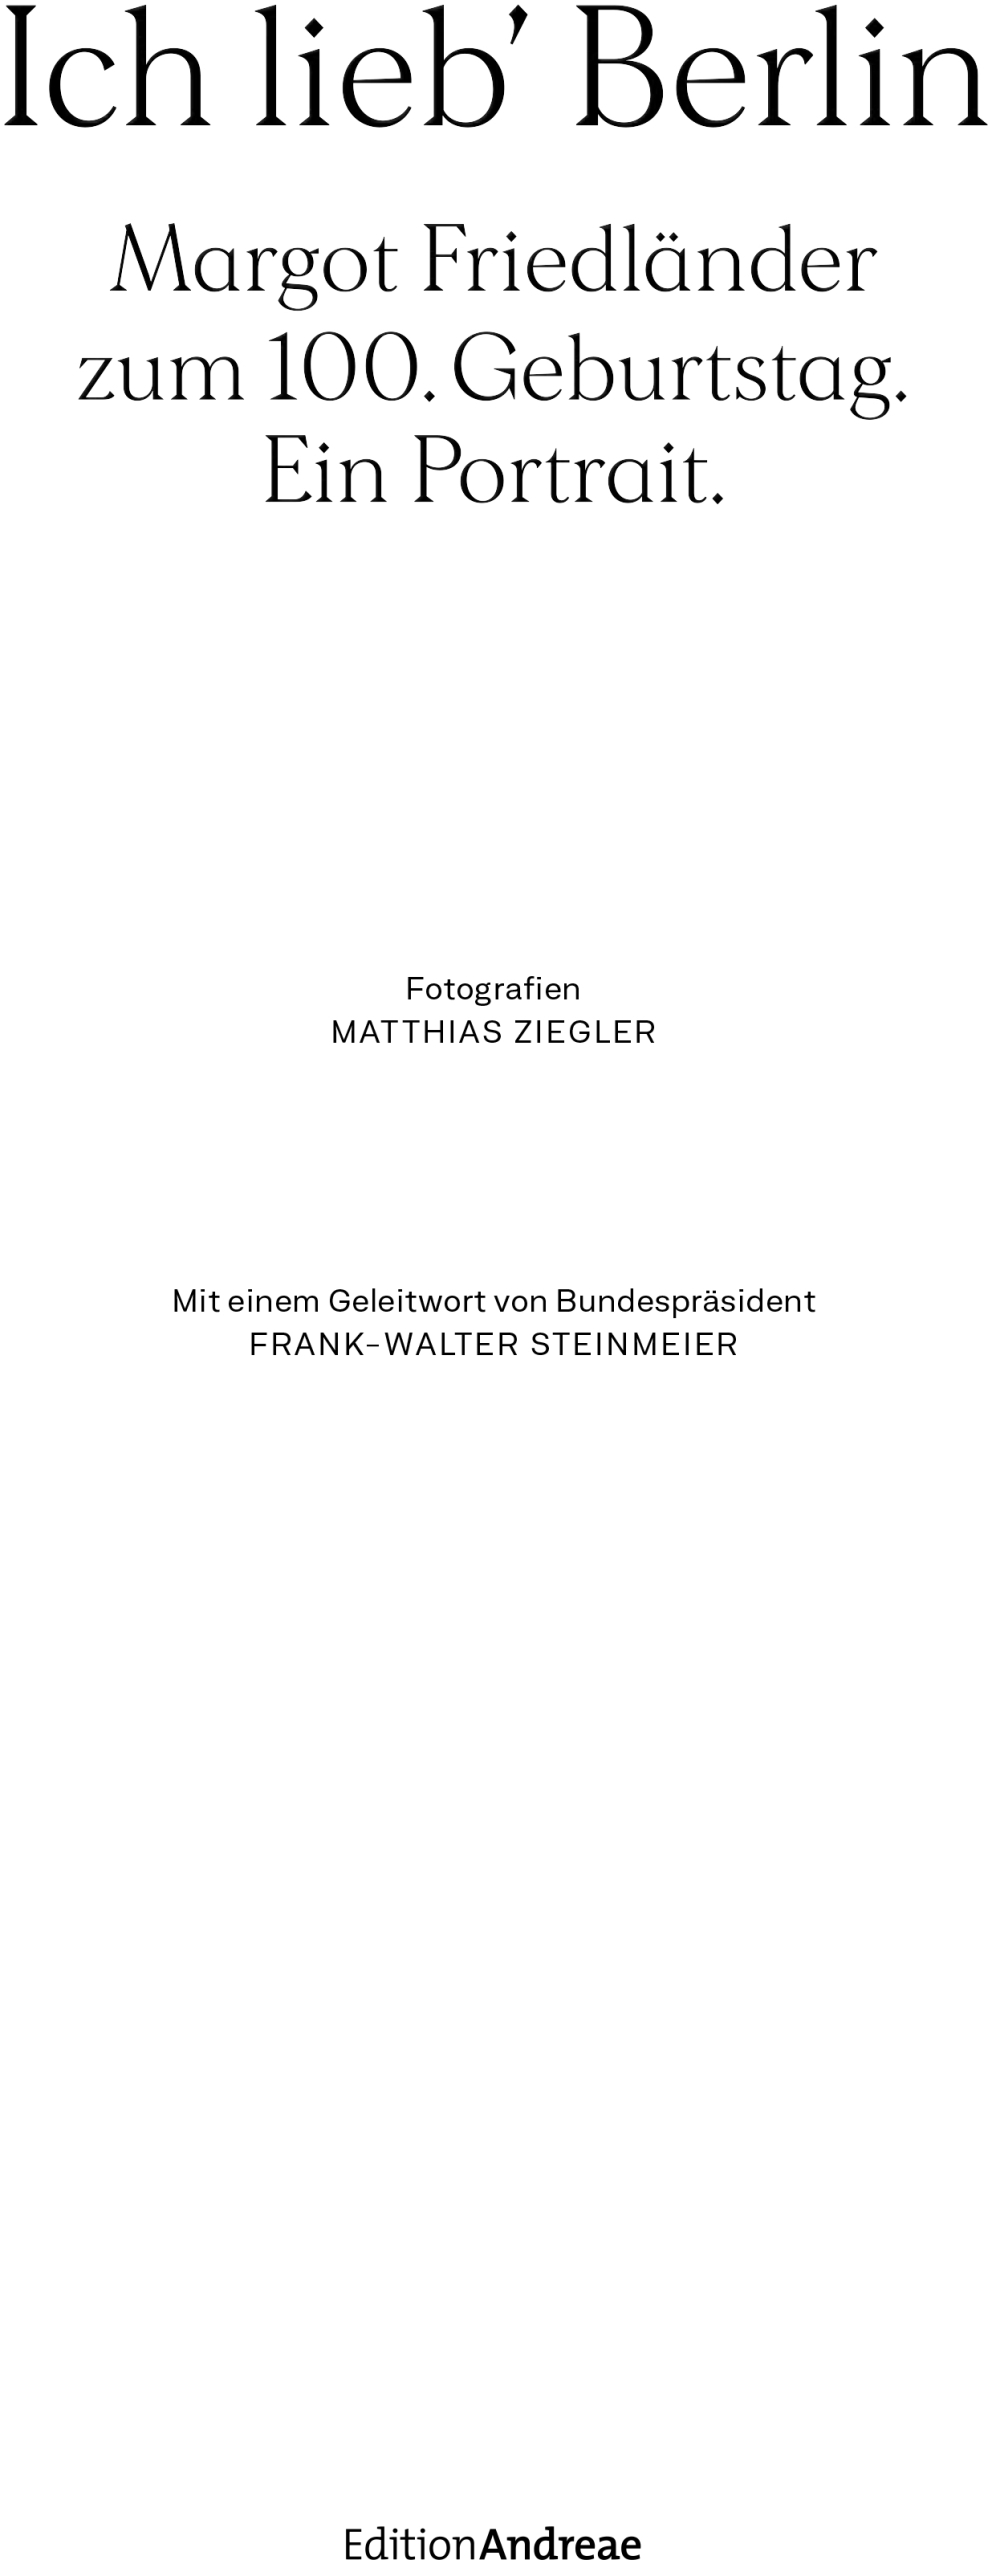 Margot Friedländer Book